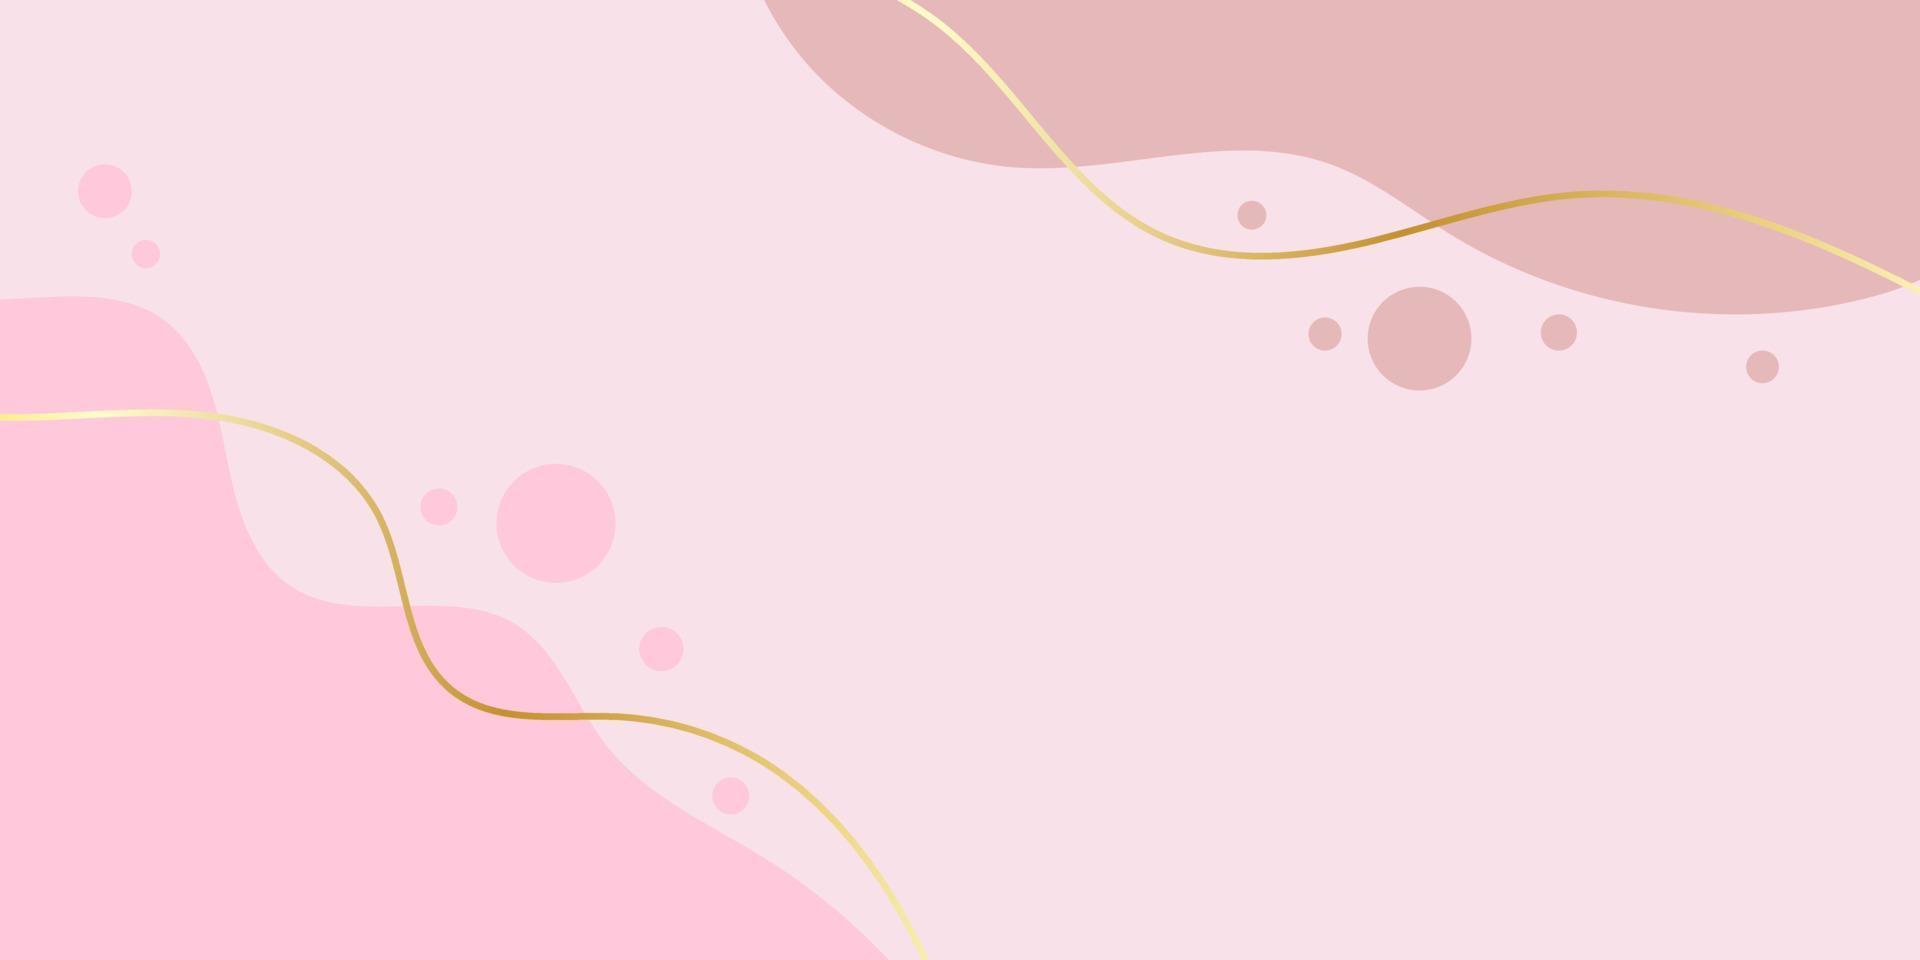 abstrato moderno. onda rosa com linhas de gradientes de ouro. bandeira da moda. ilustração vetorial. vetor